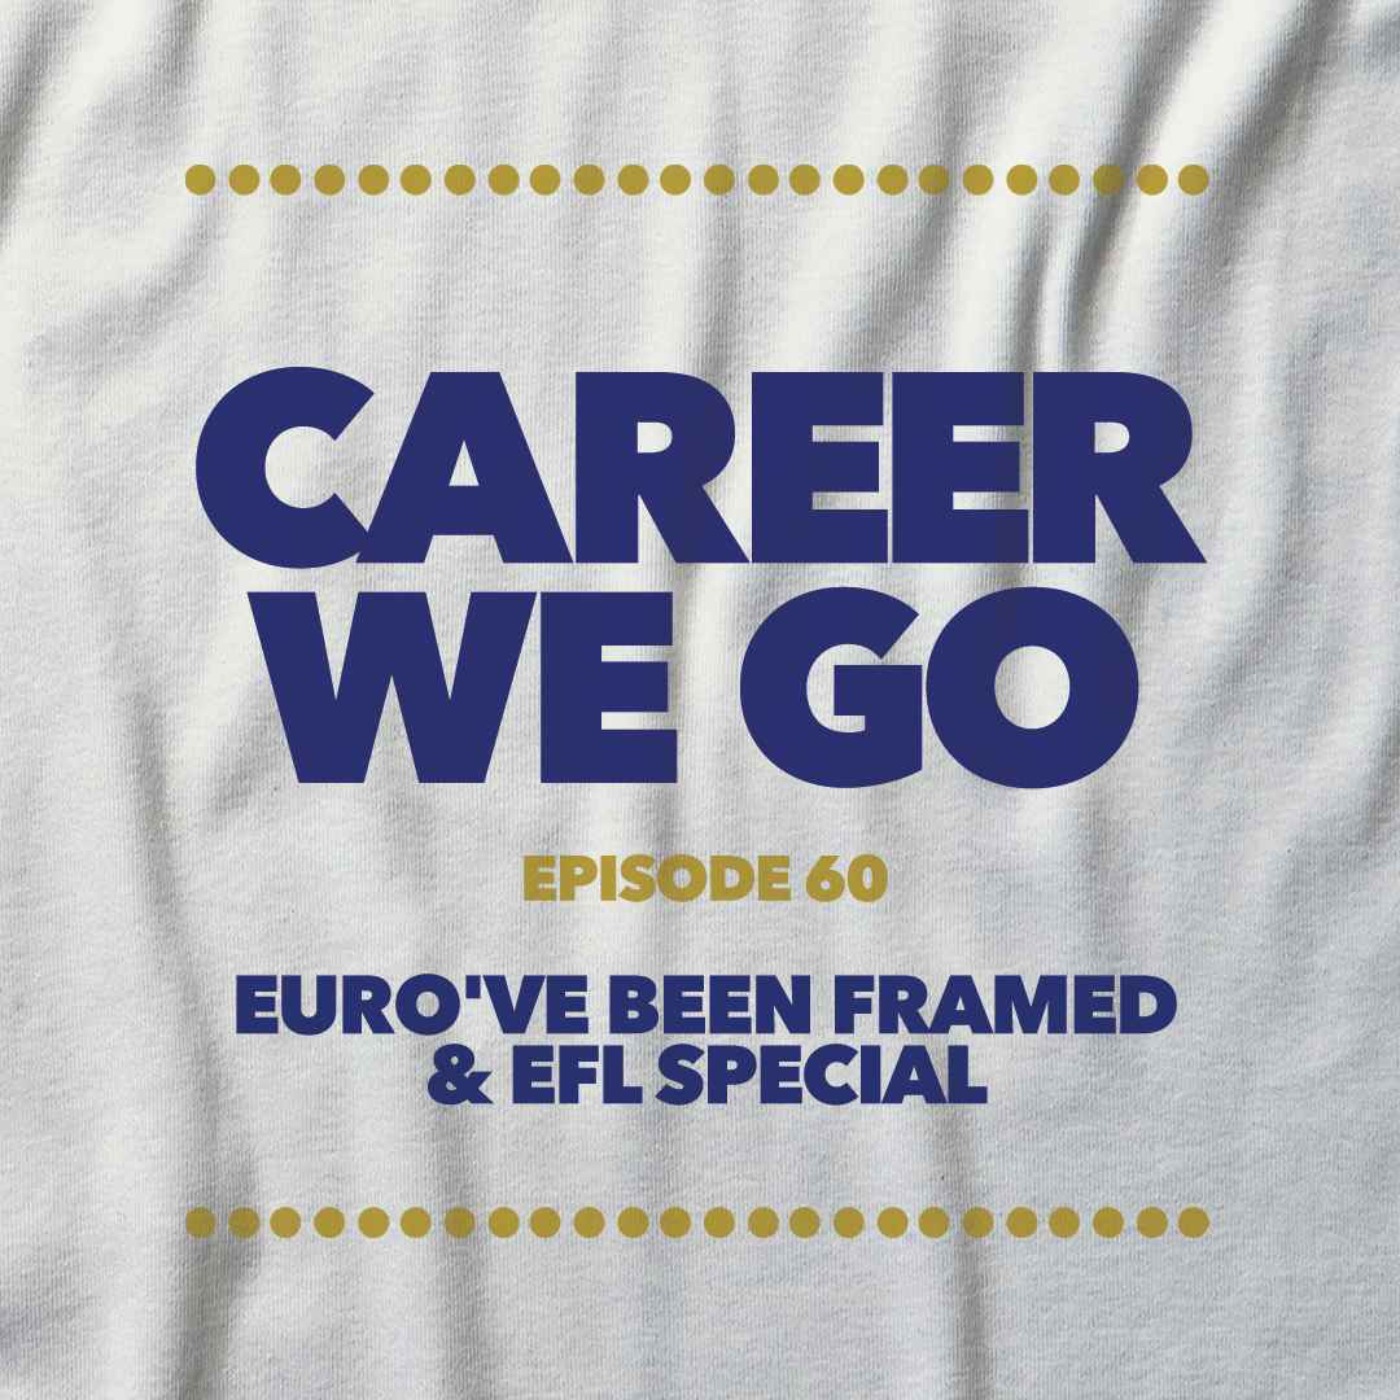 Euro've been Framed & EFL Special